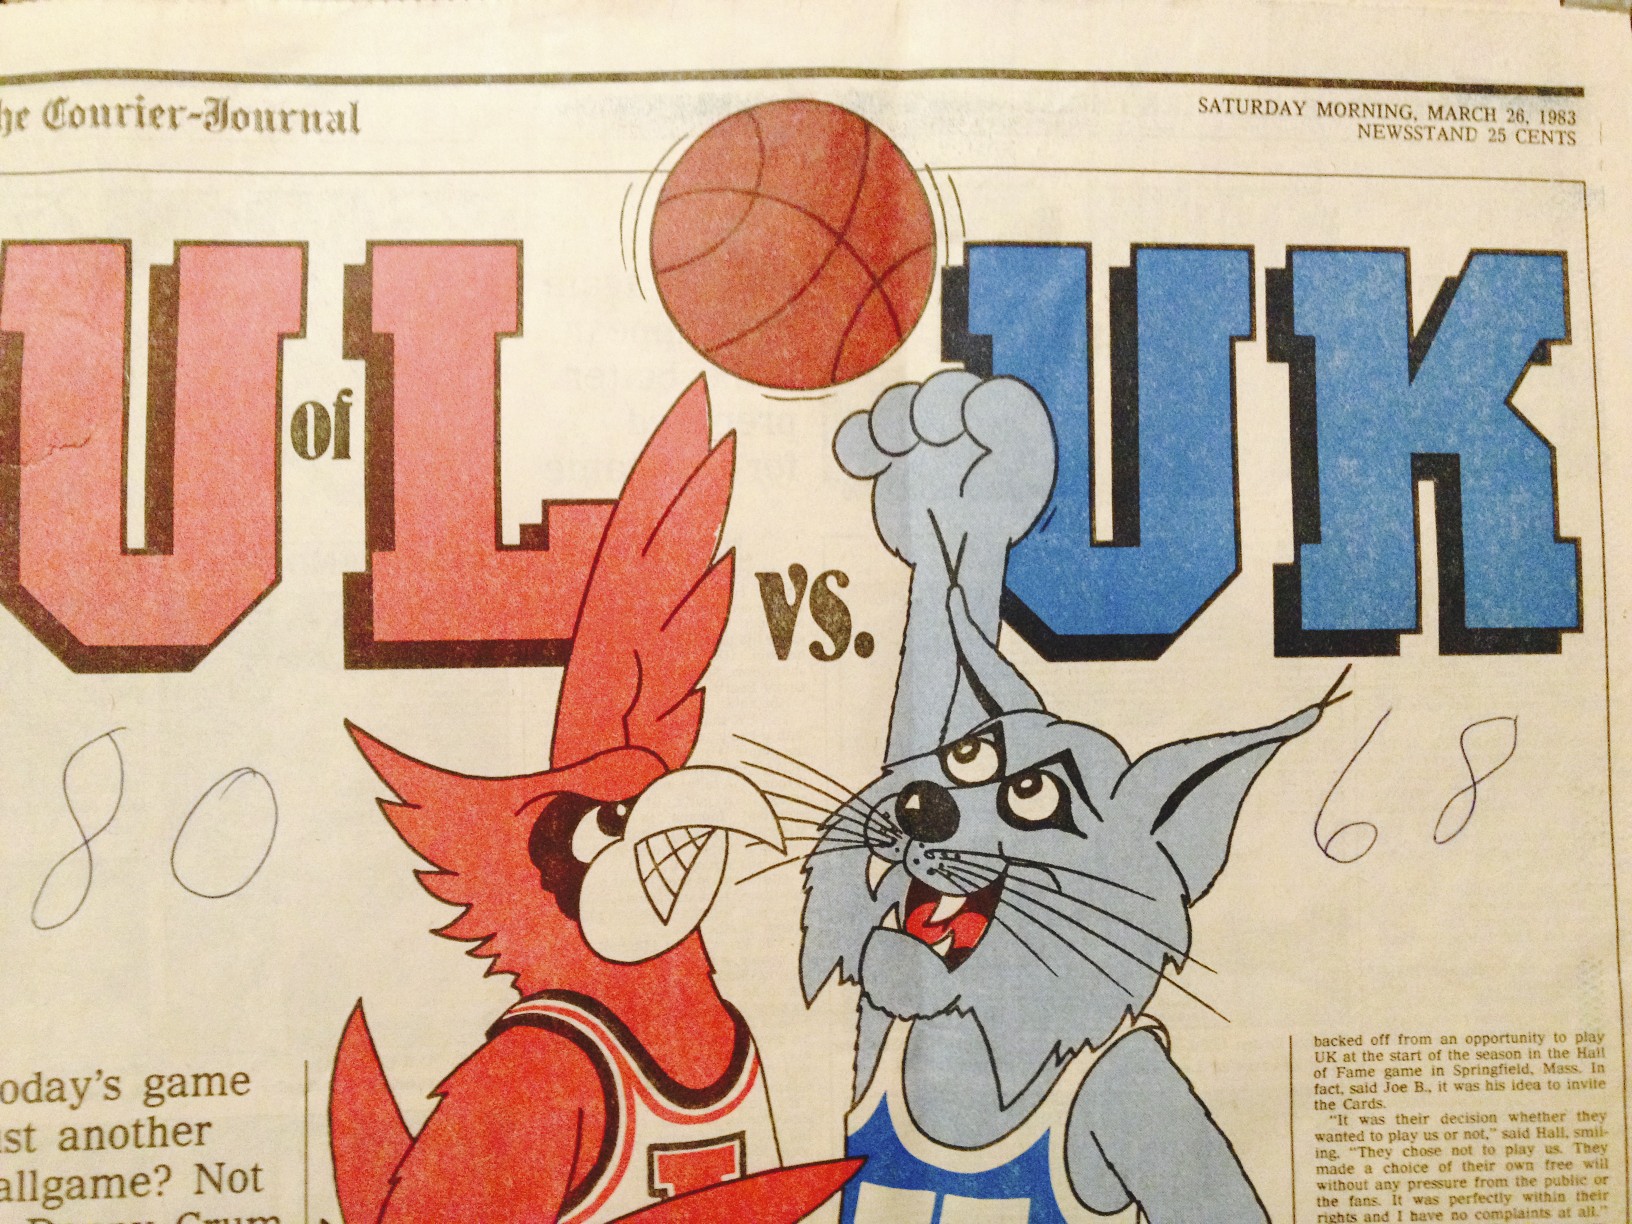 Louisville vs. Kentucky 1983 Dream Game, Courier-Journal